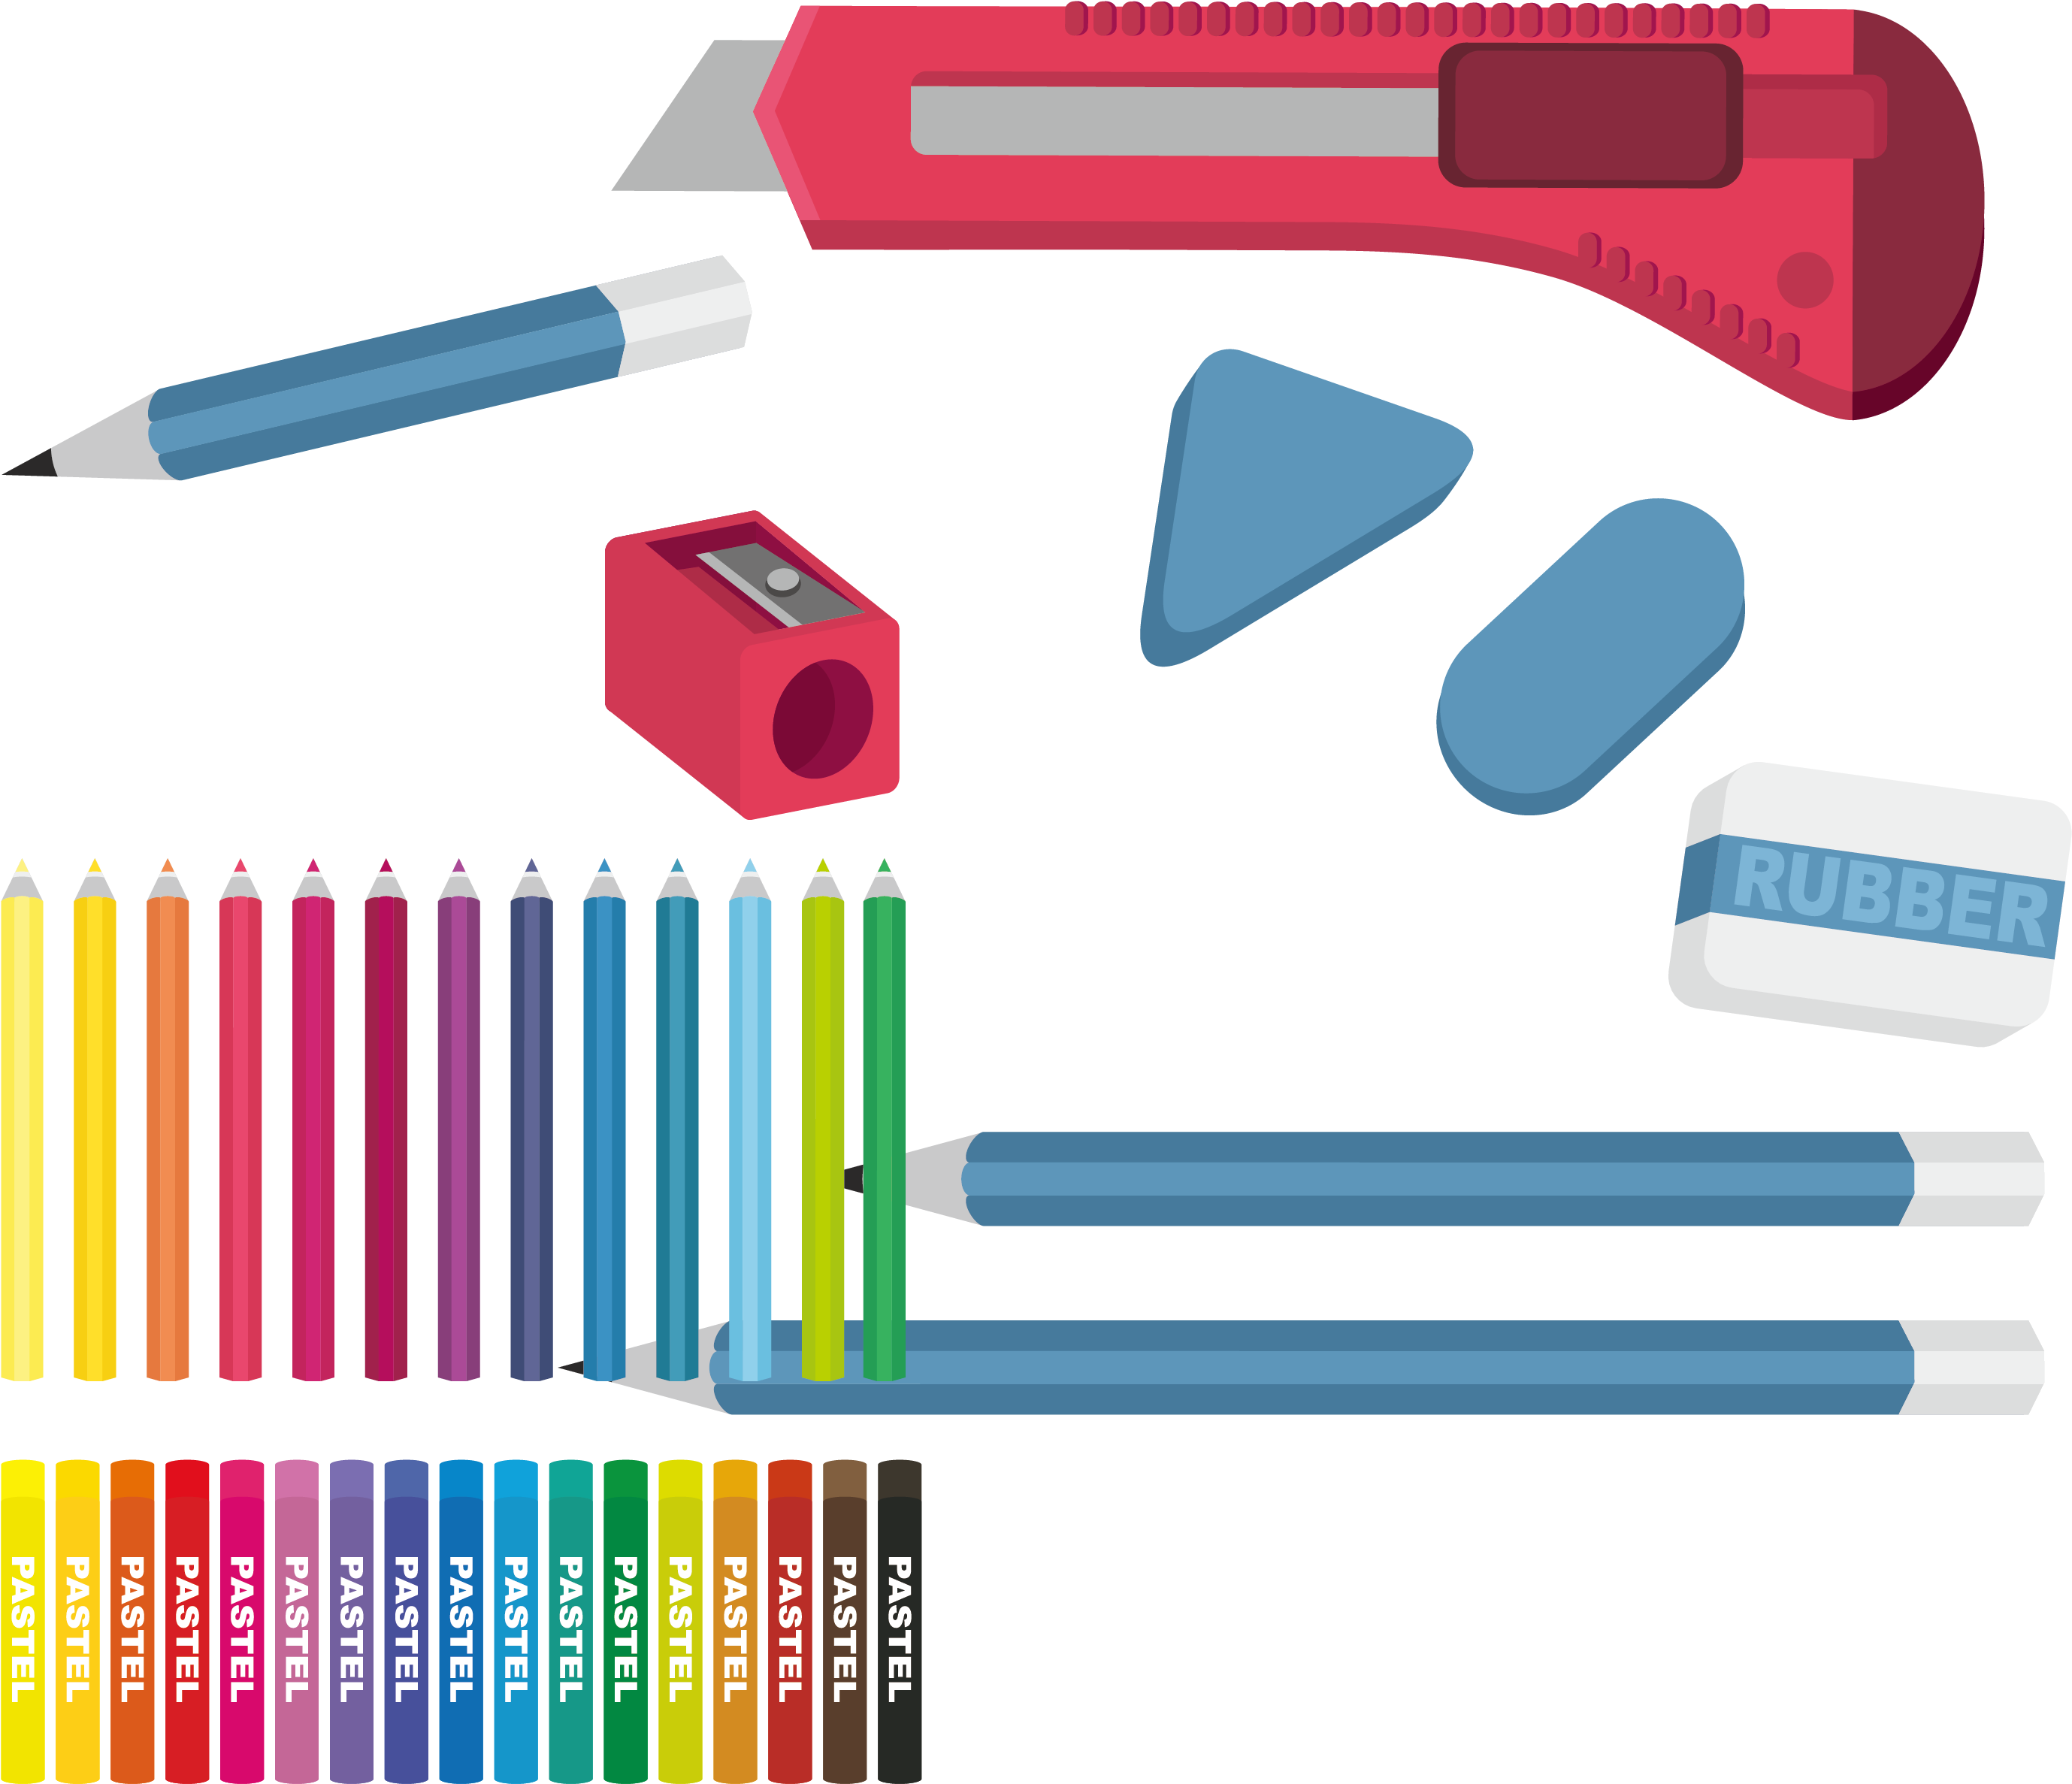 Eraser Graphic Design Pencil - Eraser Graphic Design Pencil (2975x2902)